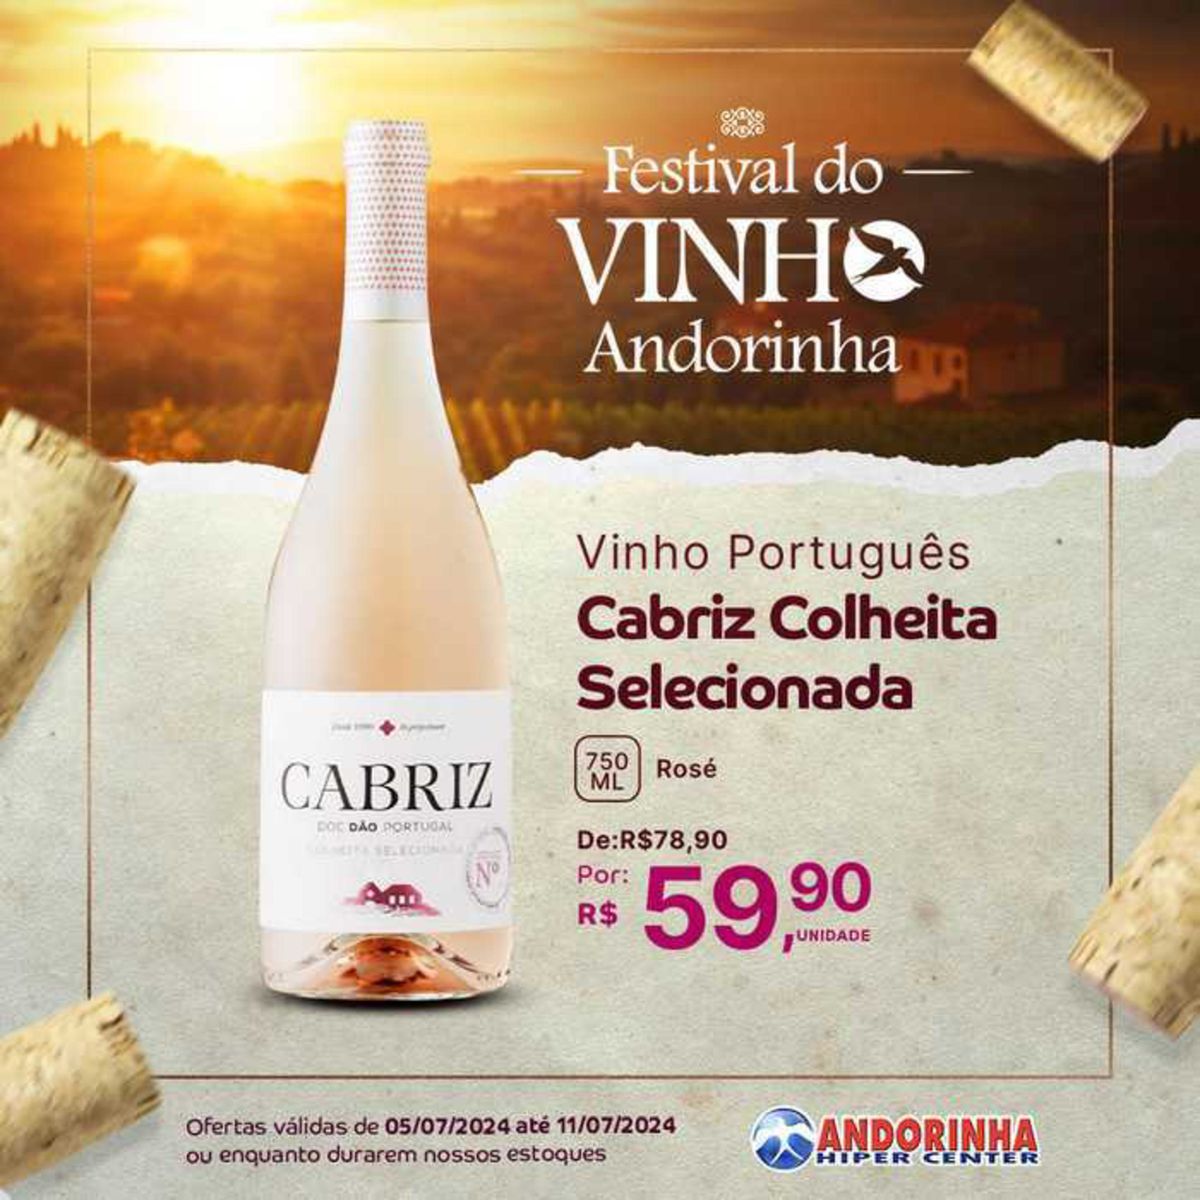 Vinho Português - Promoção de Vinhos Cabriz Colheita Selecionada e AB RIZ Rosé